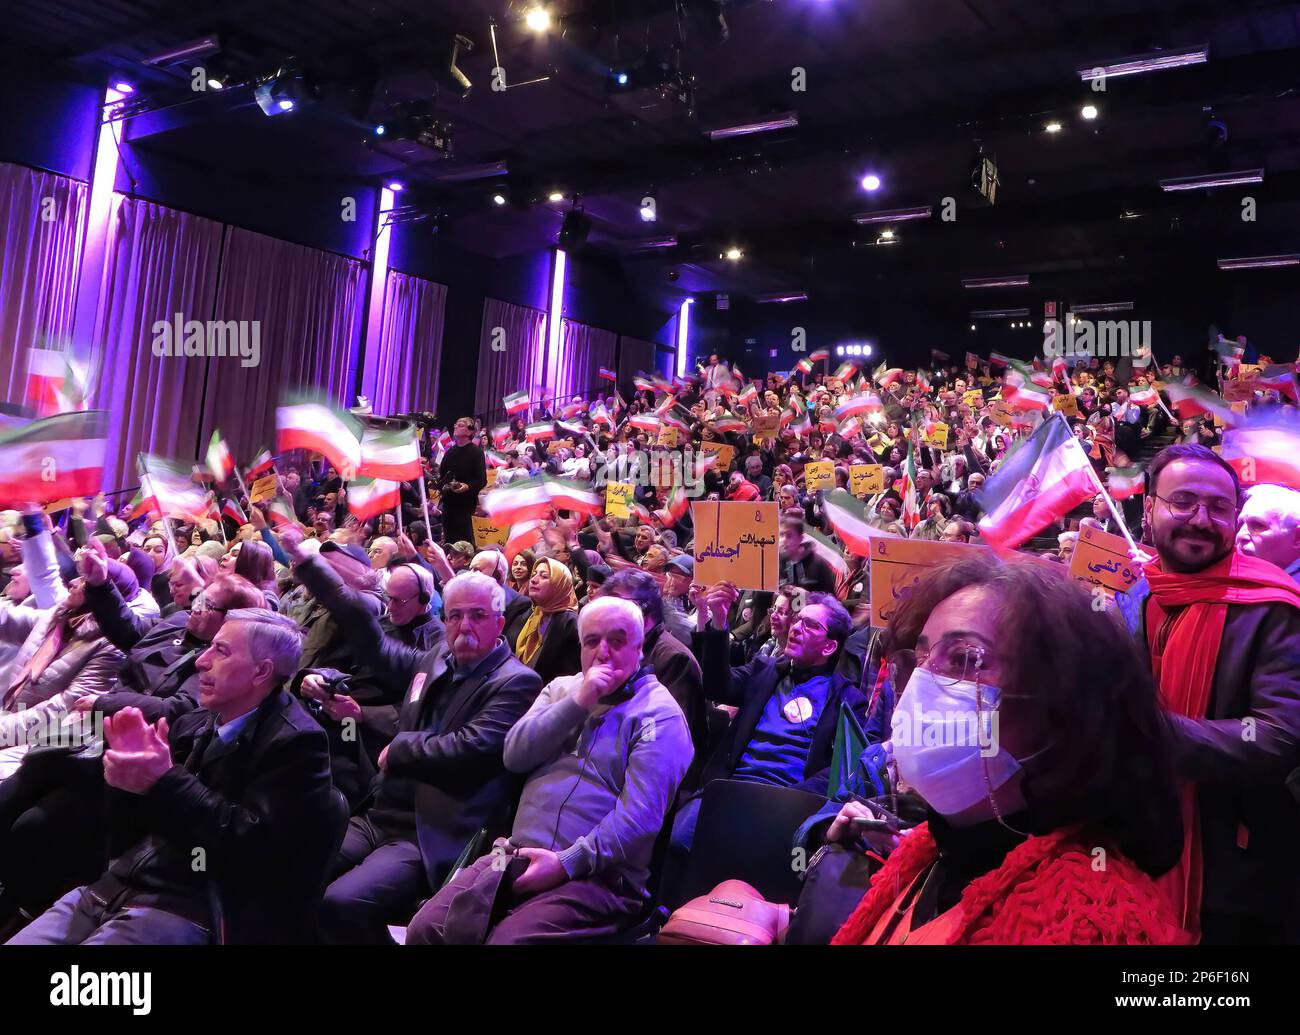 Brüssel, Belgien. 4. März 2023. Eine Menge Teilnehmer hört den Rednern während einer Konferenz zu, die vom iranischen Widerstand ausgerichtet wird. Renommierte Führerinnen aus Europa und den USA nahmen an der Konferenz Teil. Der Schwerpunkt lag auf der führenden Rolle der Frauen in der iranischen Volksrevolution und ihrem Kampf gegen das frauenfeindliche Regime im Iran. Hauptrednerin war Maryam Rajavi, gewählte Präsidentin des Nationalen Widerstandsrates Irans. (Kreditbild: © Siavosh Hosseini/SOPA Images via ZUMA Press Wire) NUR REDAKTIONELLE VERWENDUNG! Nicht für den kommerziellen GEBRAUCH! Stockfoto